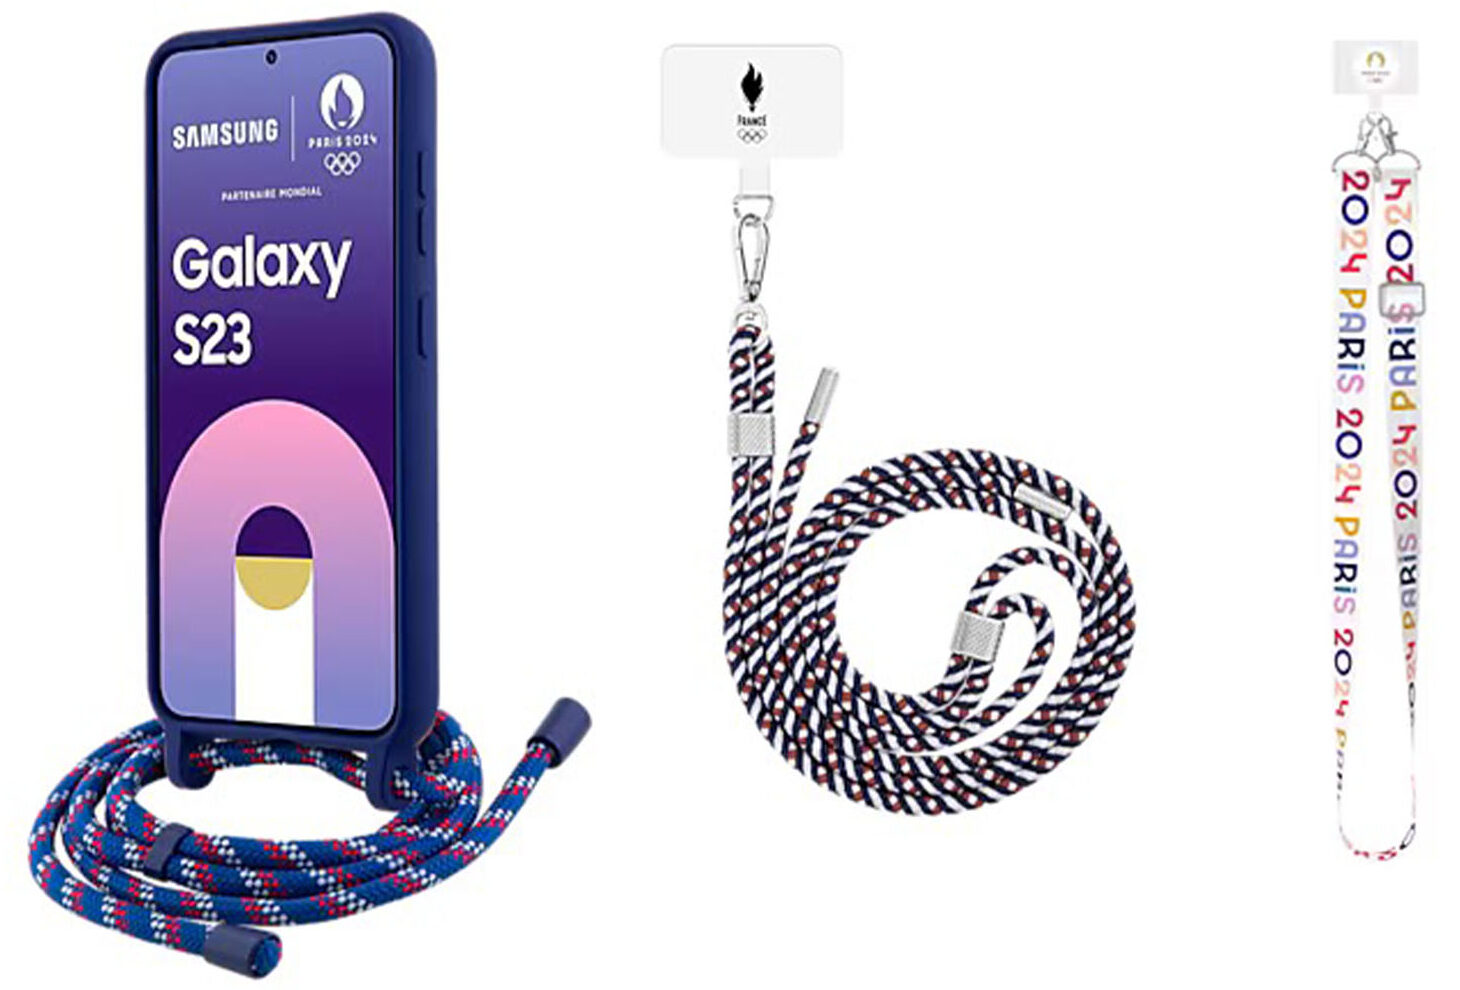 Samsung Paris 2024 Olimpiyatlarına özel boyunluk